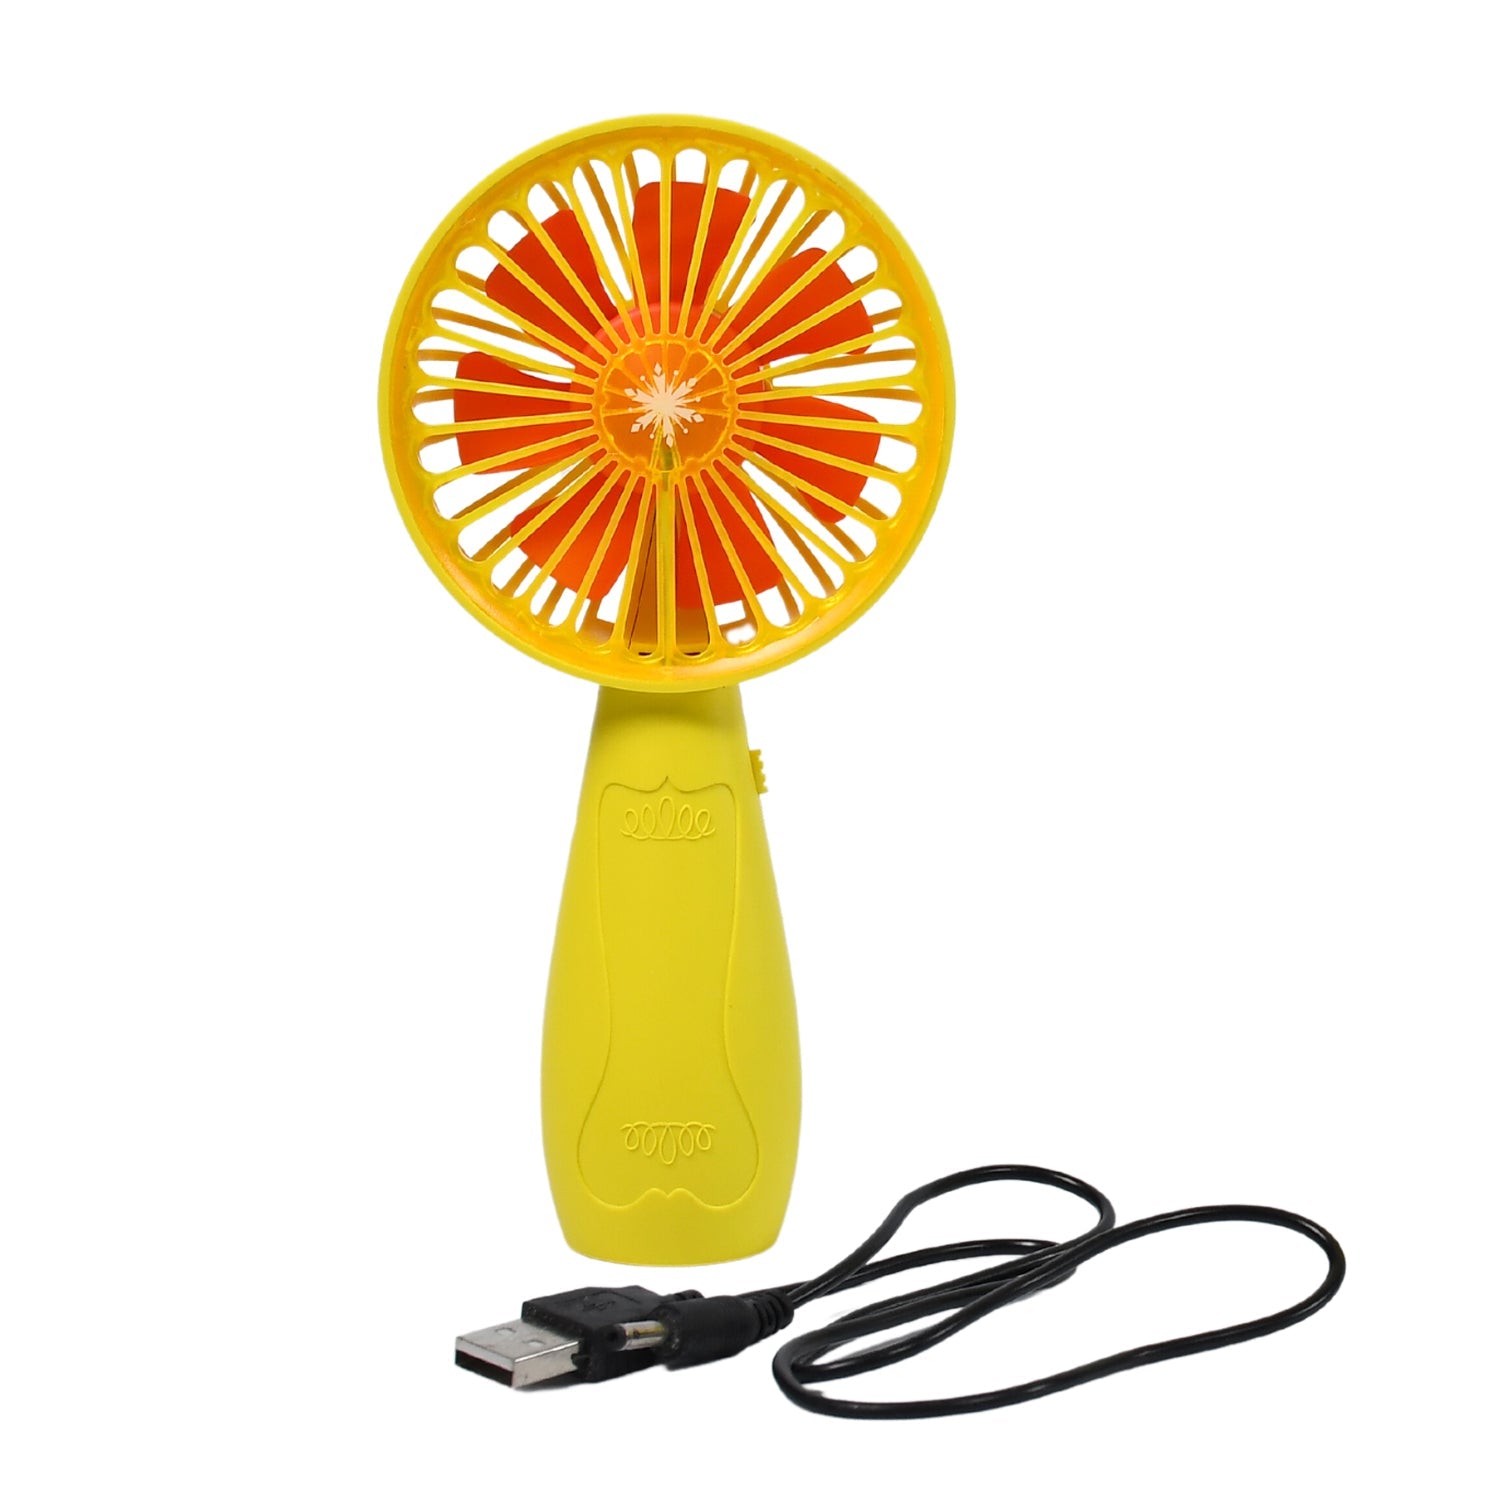 7605 Foldable Handy Light Fans Rechargeable Handheld Mini Fan Electric Personal Fans Hand Bar Desktop Fan DeoDap